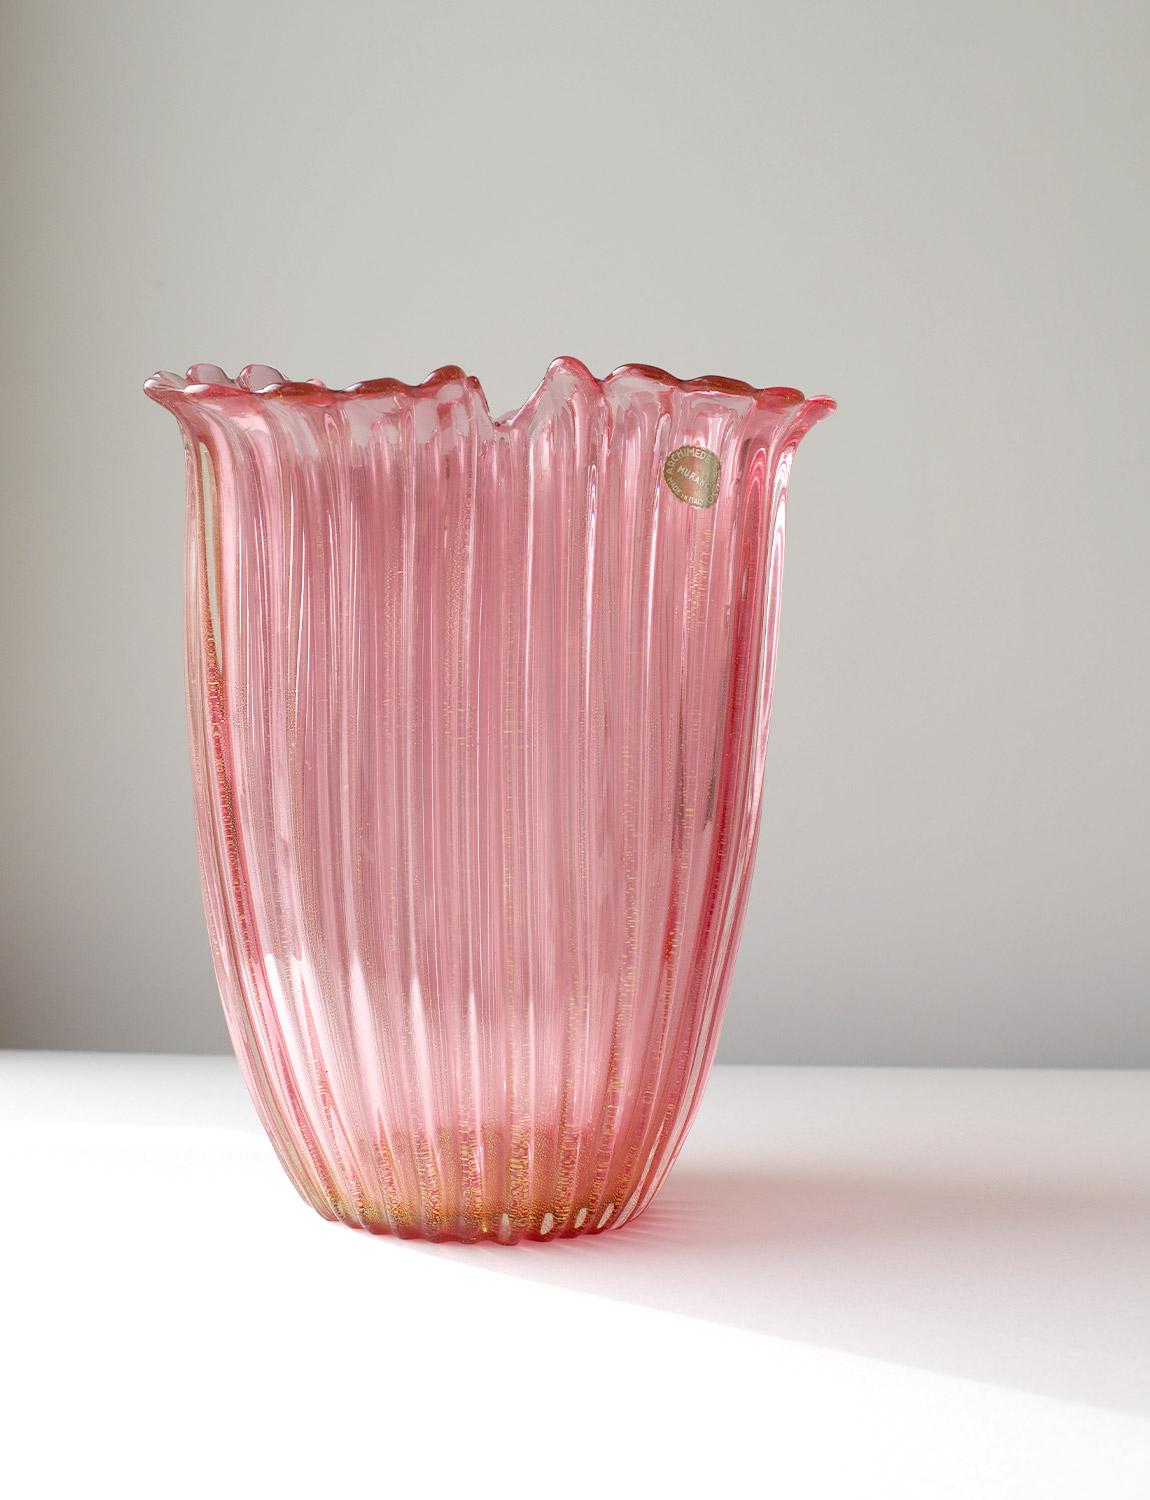 Exceptionnel vase en verre de Murano soufflé à la main par Archimede Seguso, d'un rose profond parsemé de mouchetures dorées. La pièce a une forme élégante de pétale à trois branches et a l'autocollant d'origine en place. Trouvée dans une maison